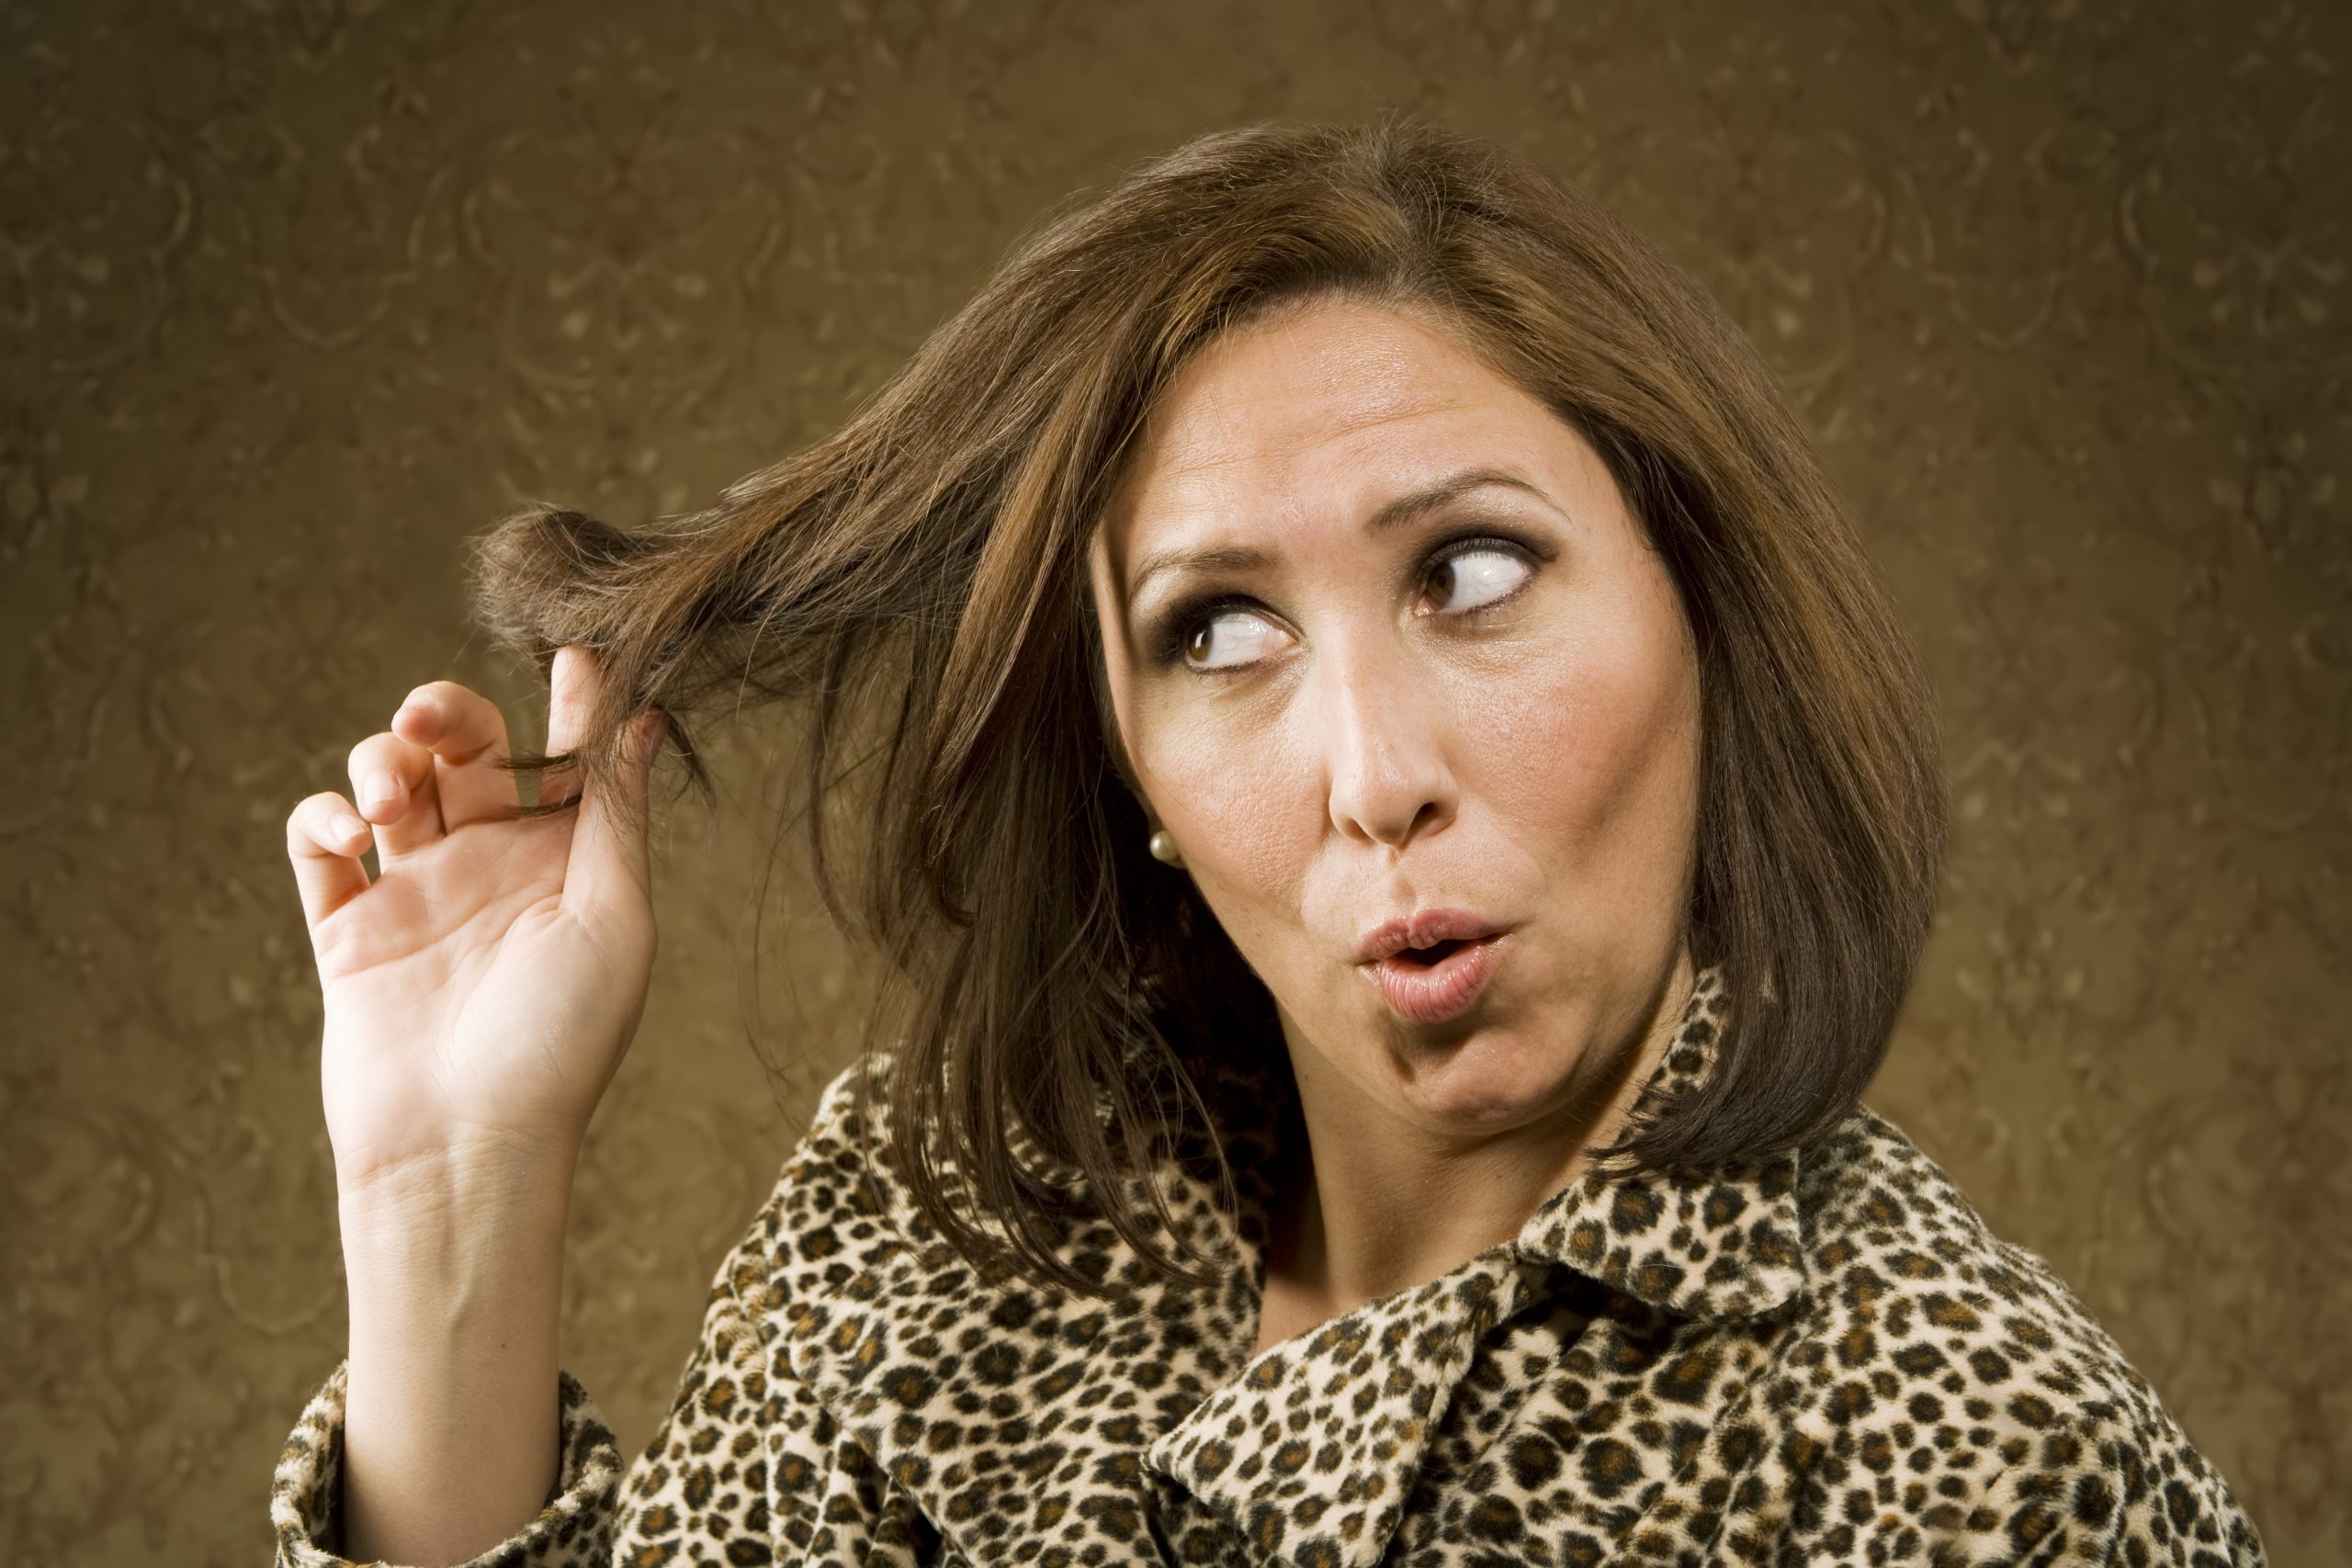 Hispanic Woman Twists her Hair